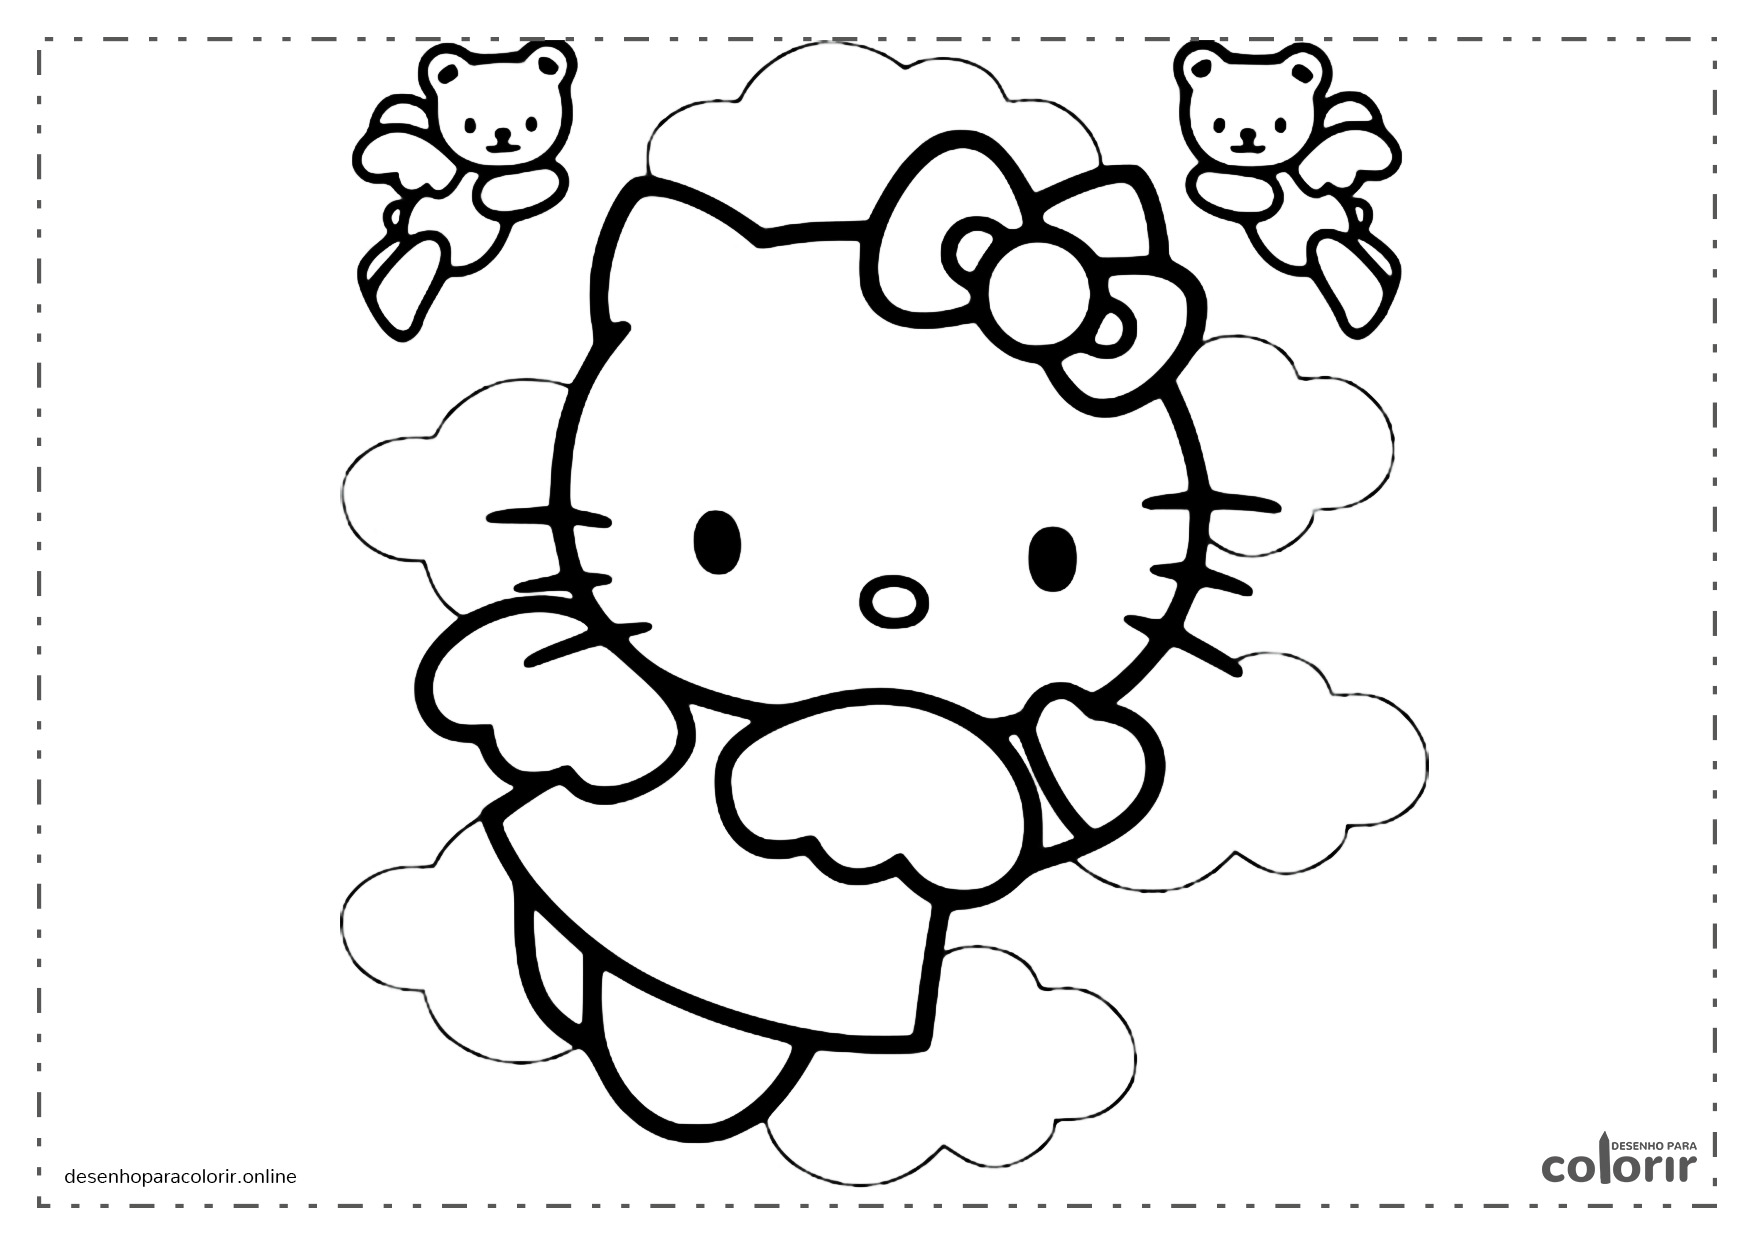 Desenhos para colorir de desenho da casa da hello kitty para